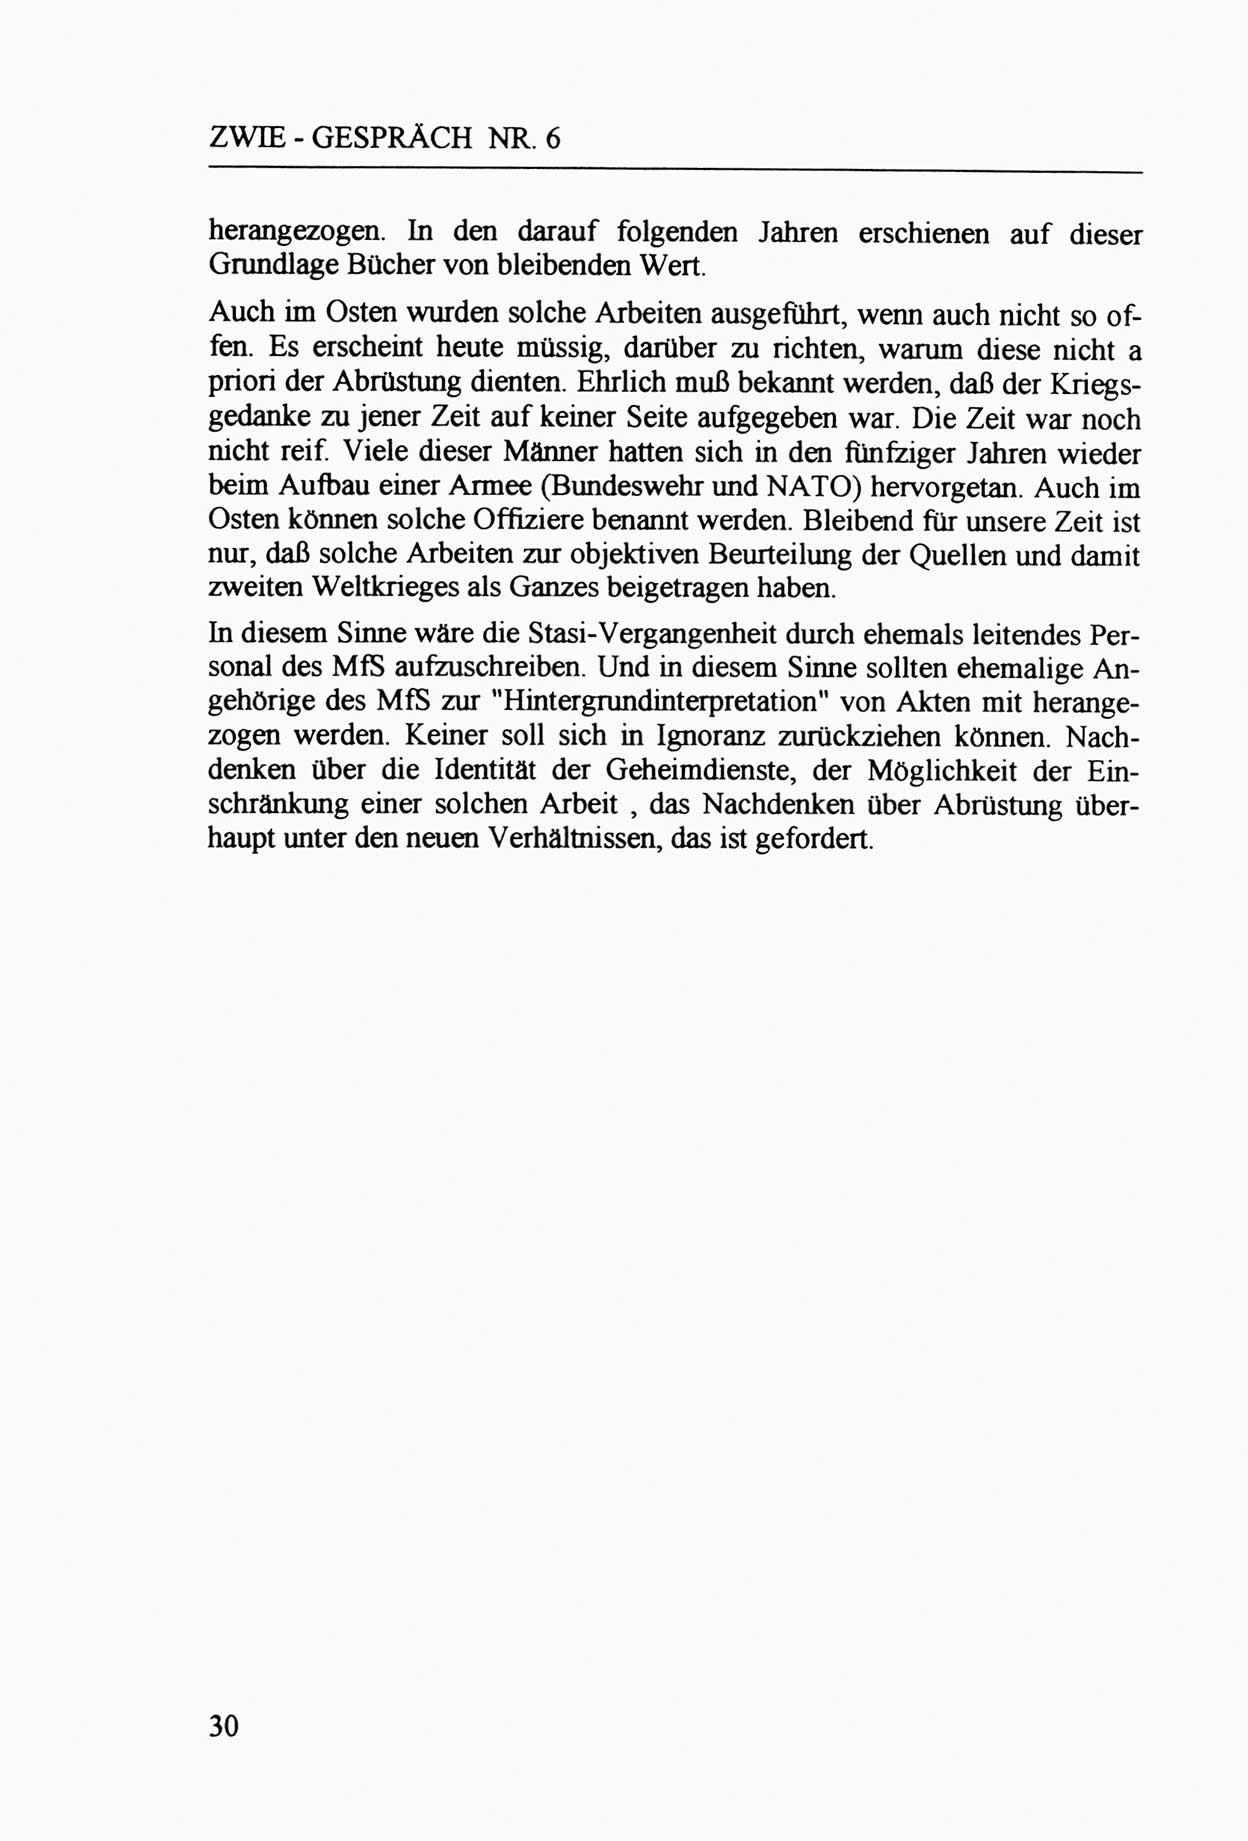 Zwie-Gespräch, Beiträge zur Aufarbeitung der Staatssicherheits-Vergangenheit [Deutsche Demokratische Republik (DDR)], Ausgabe Nr. 6, Berlin 1992, Seite 30 (Zwie-Gespr. Ausg. 6 1992, S. 30)